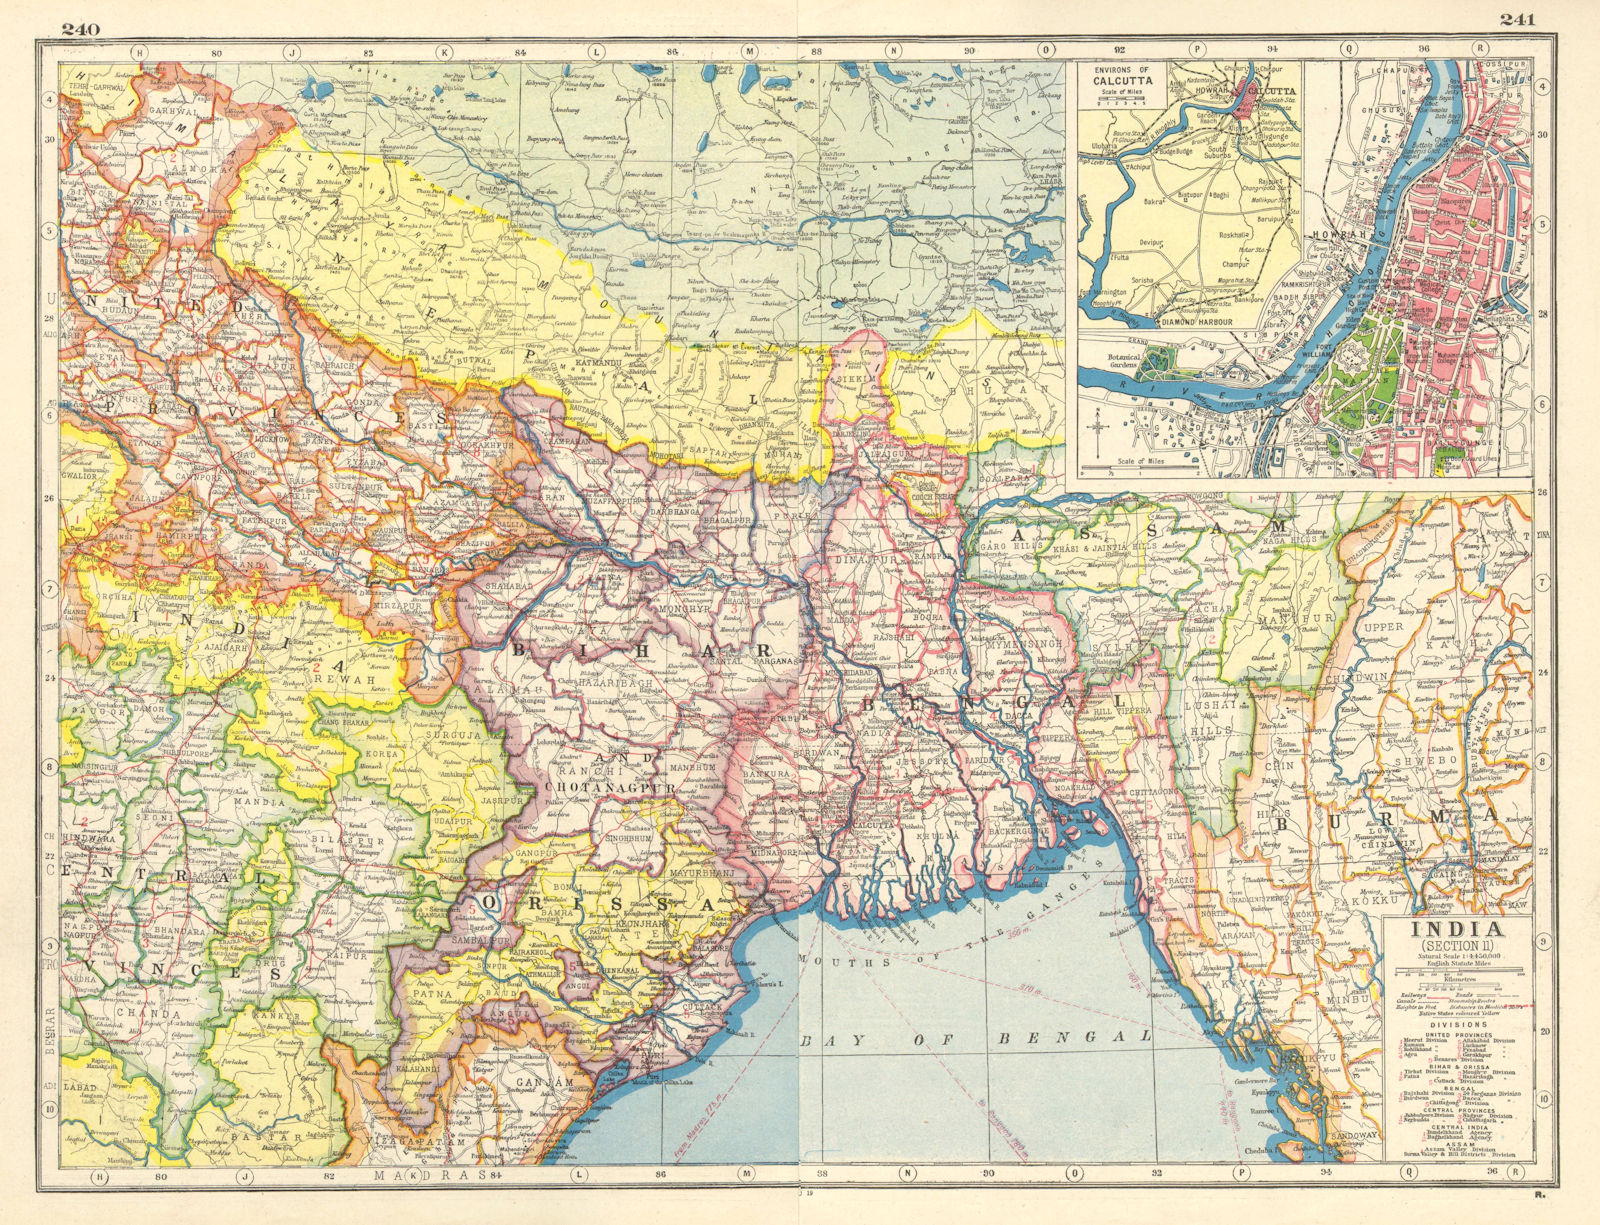 BRITISH INDIA NE. Bengal Nepal Orissa Bihar. Bangladesh. Calcutta plan 1920 map